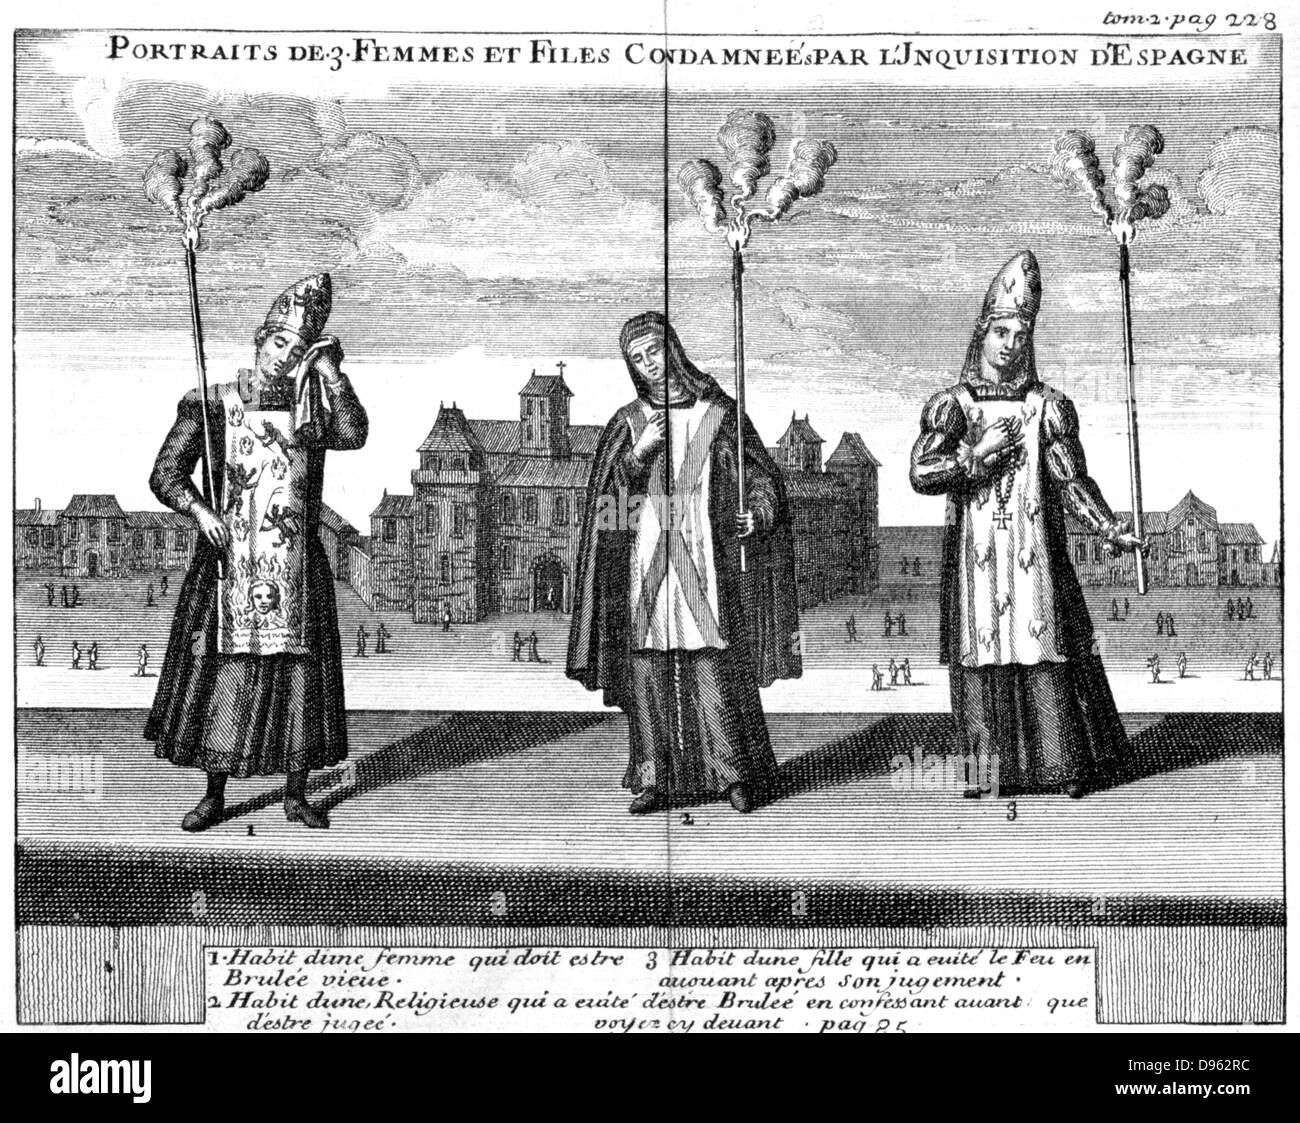 Trois femmes condamnées par l'Inquisition. La gravure sur cuivre, Cologne, 1759 Banque D'Images